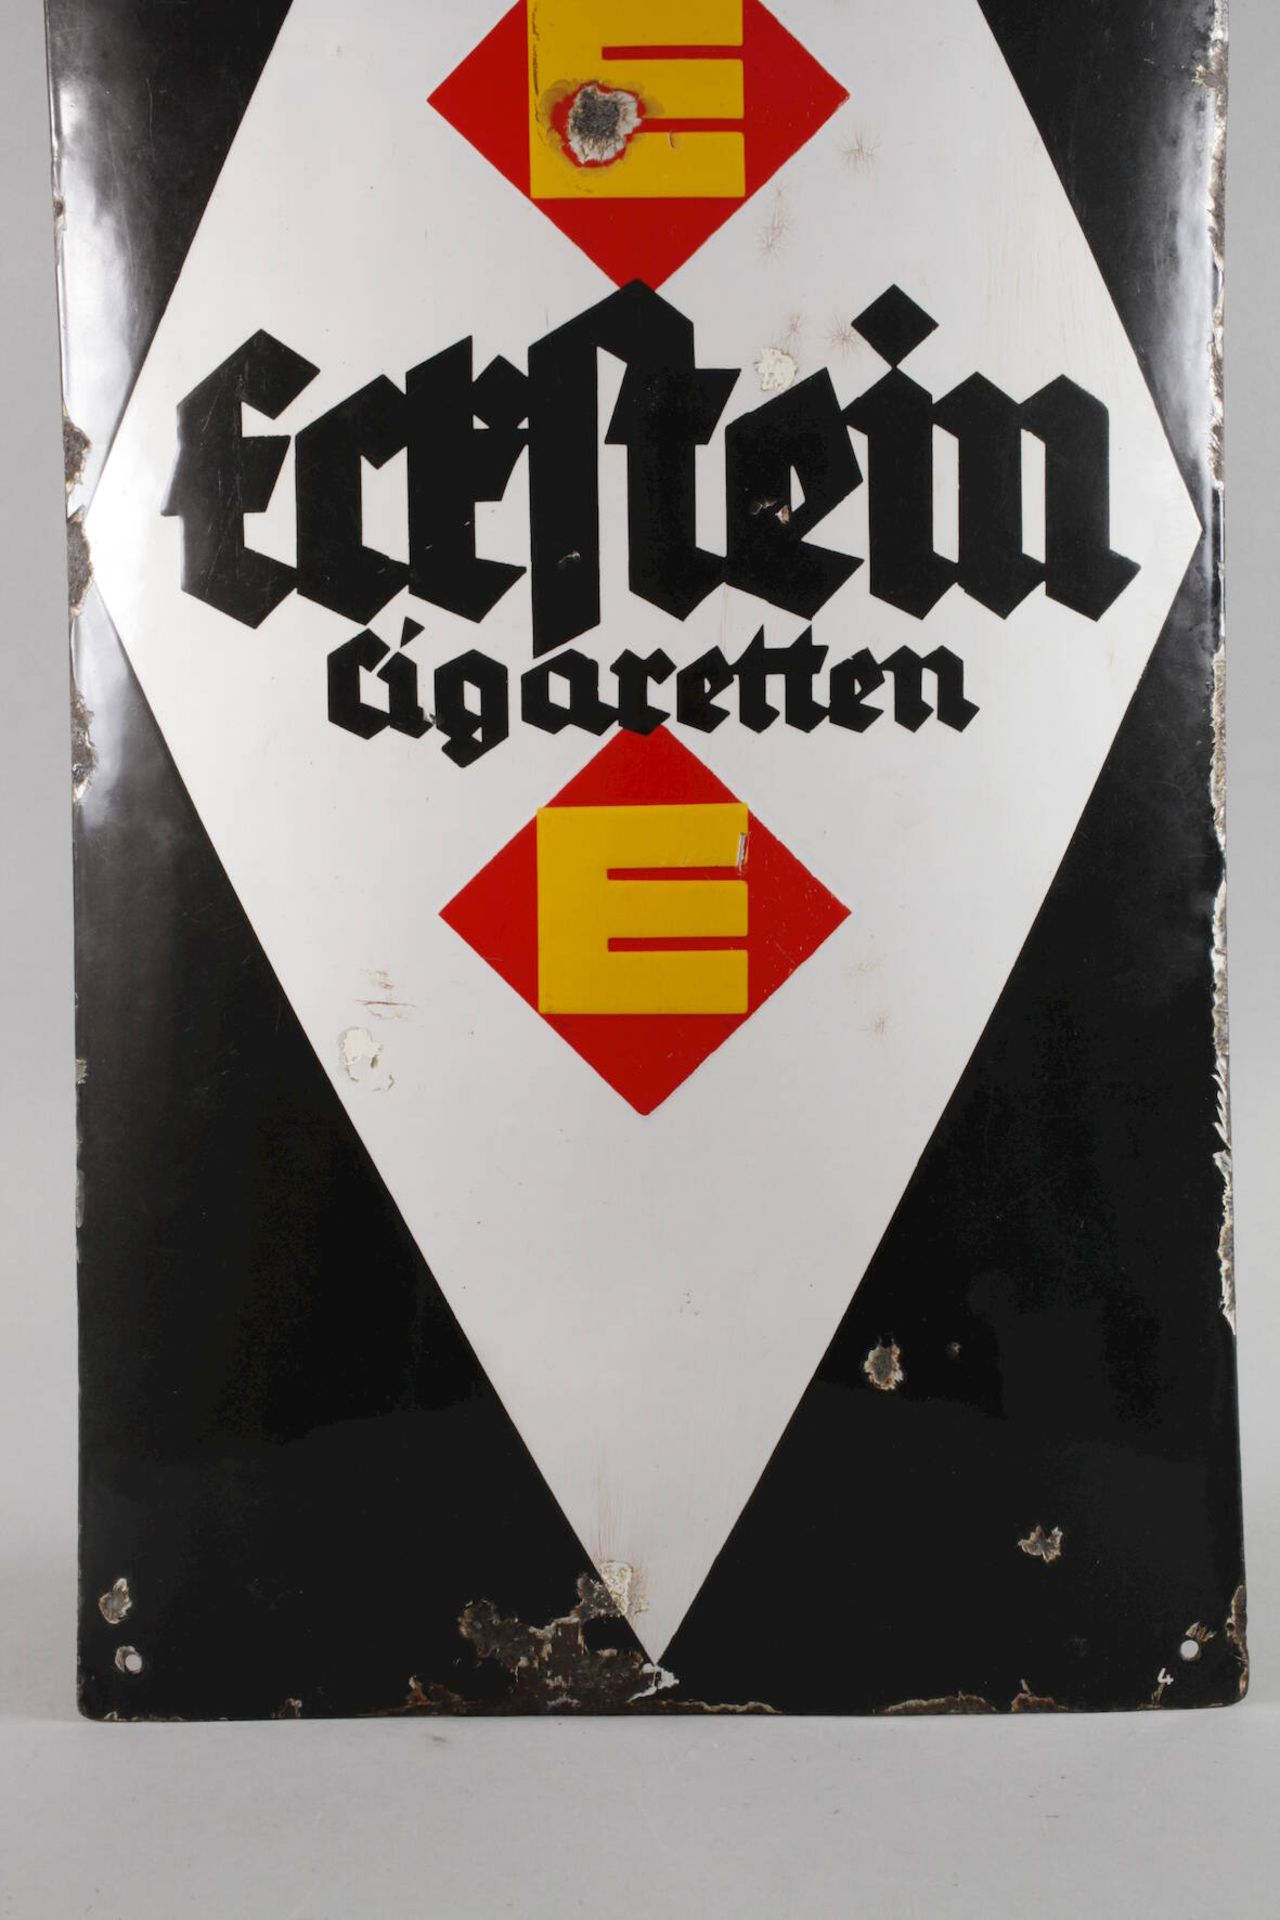 Blechschild Eckstein Zigarettenum 1920, ungemarkt, hochrechteckiges, stark gebauchtes Blechschild, - Bild 3 aus 4